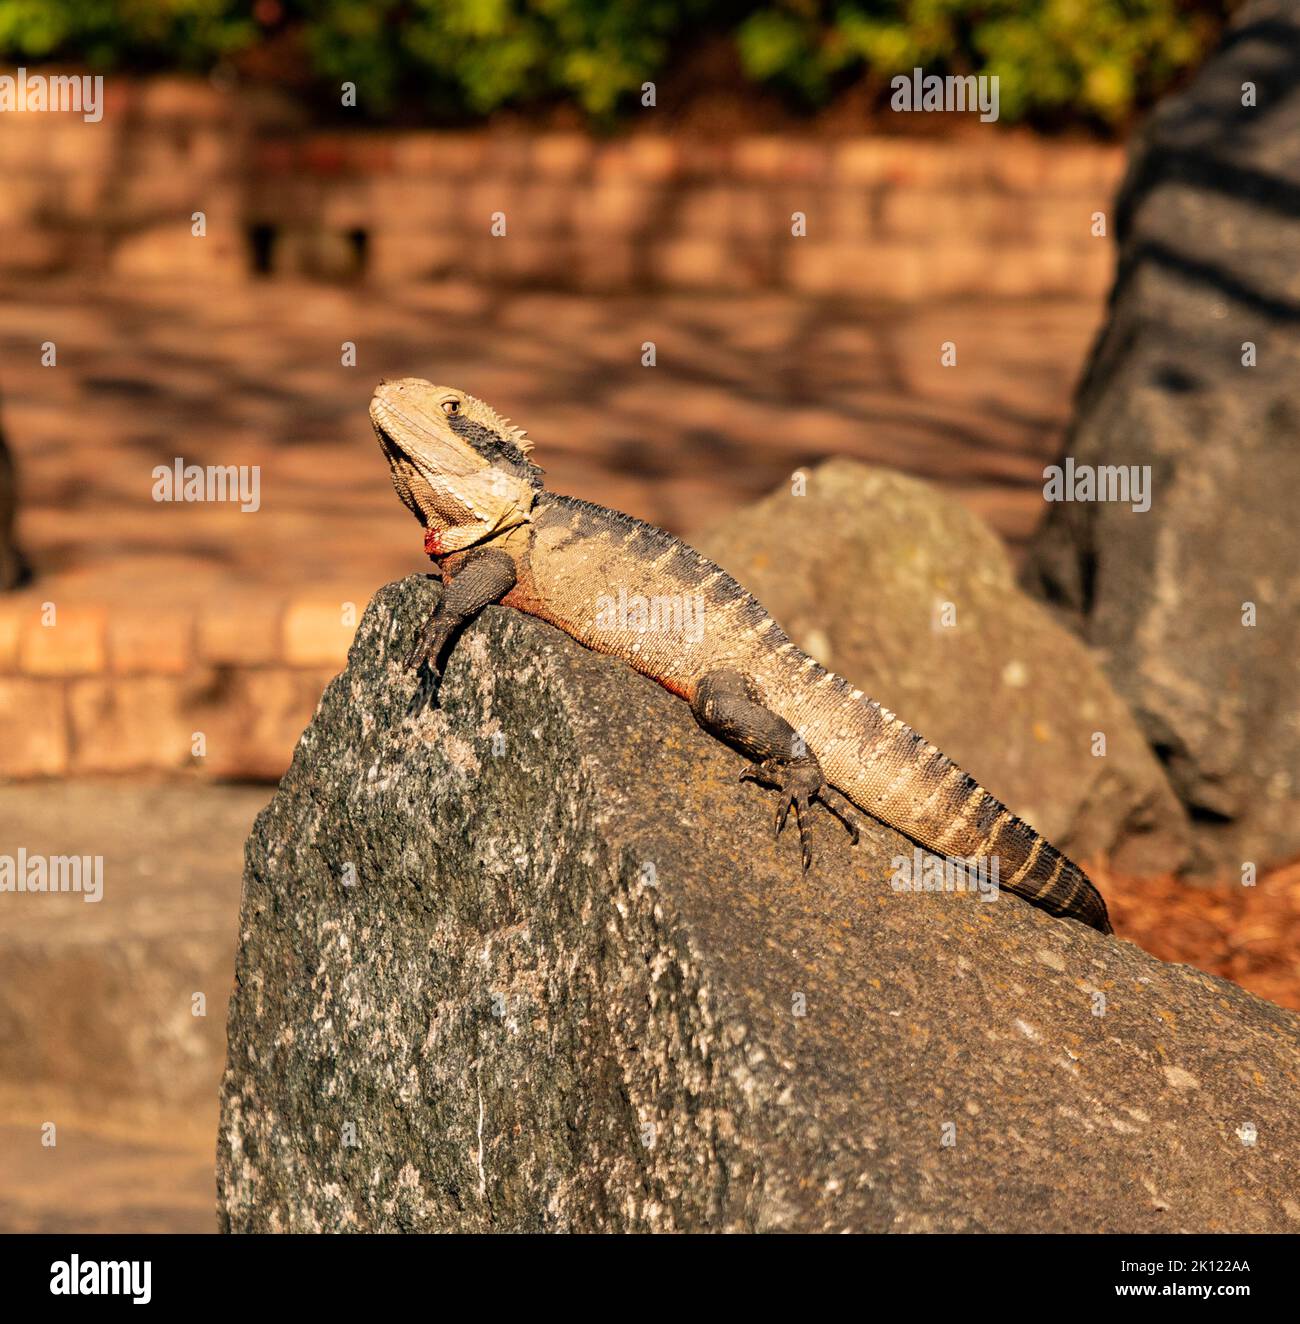 A lizard sunbathing on rocks Stock Photo